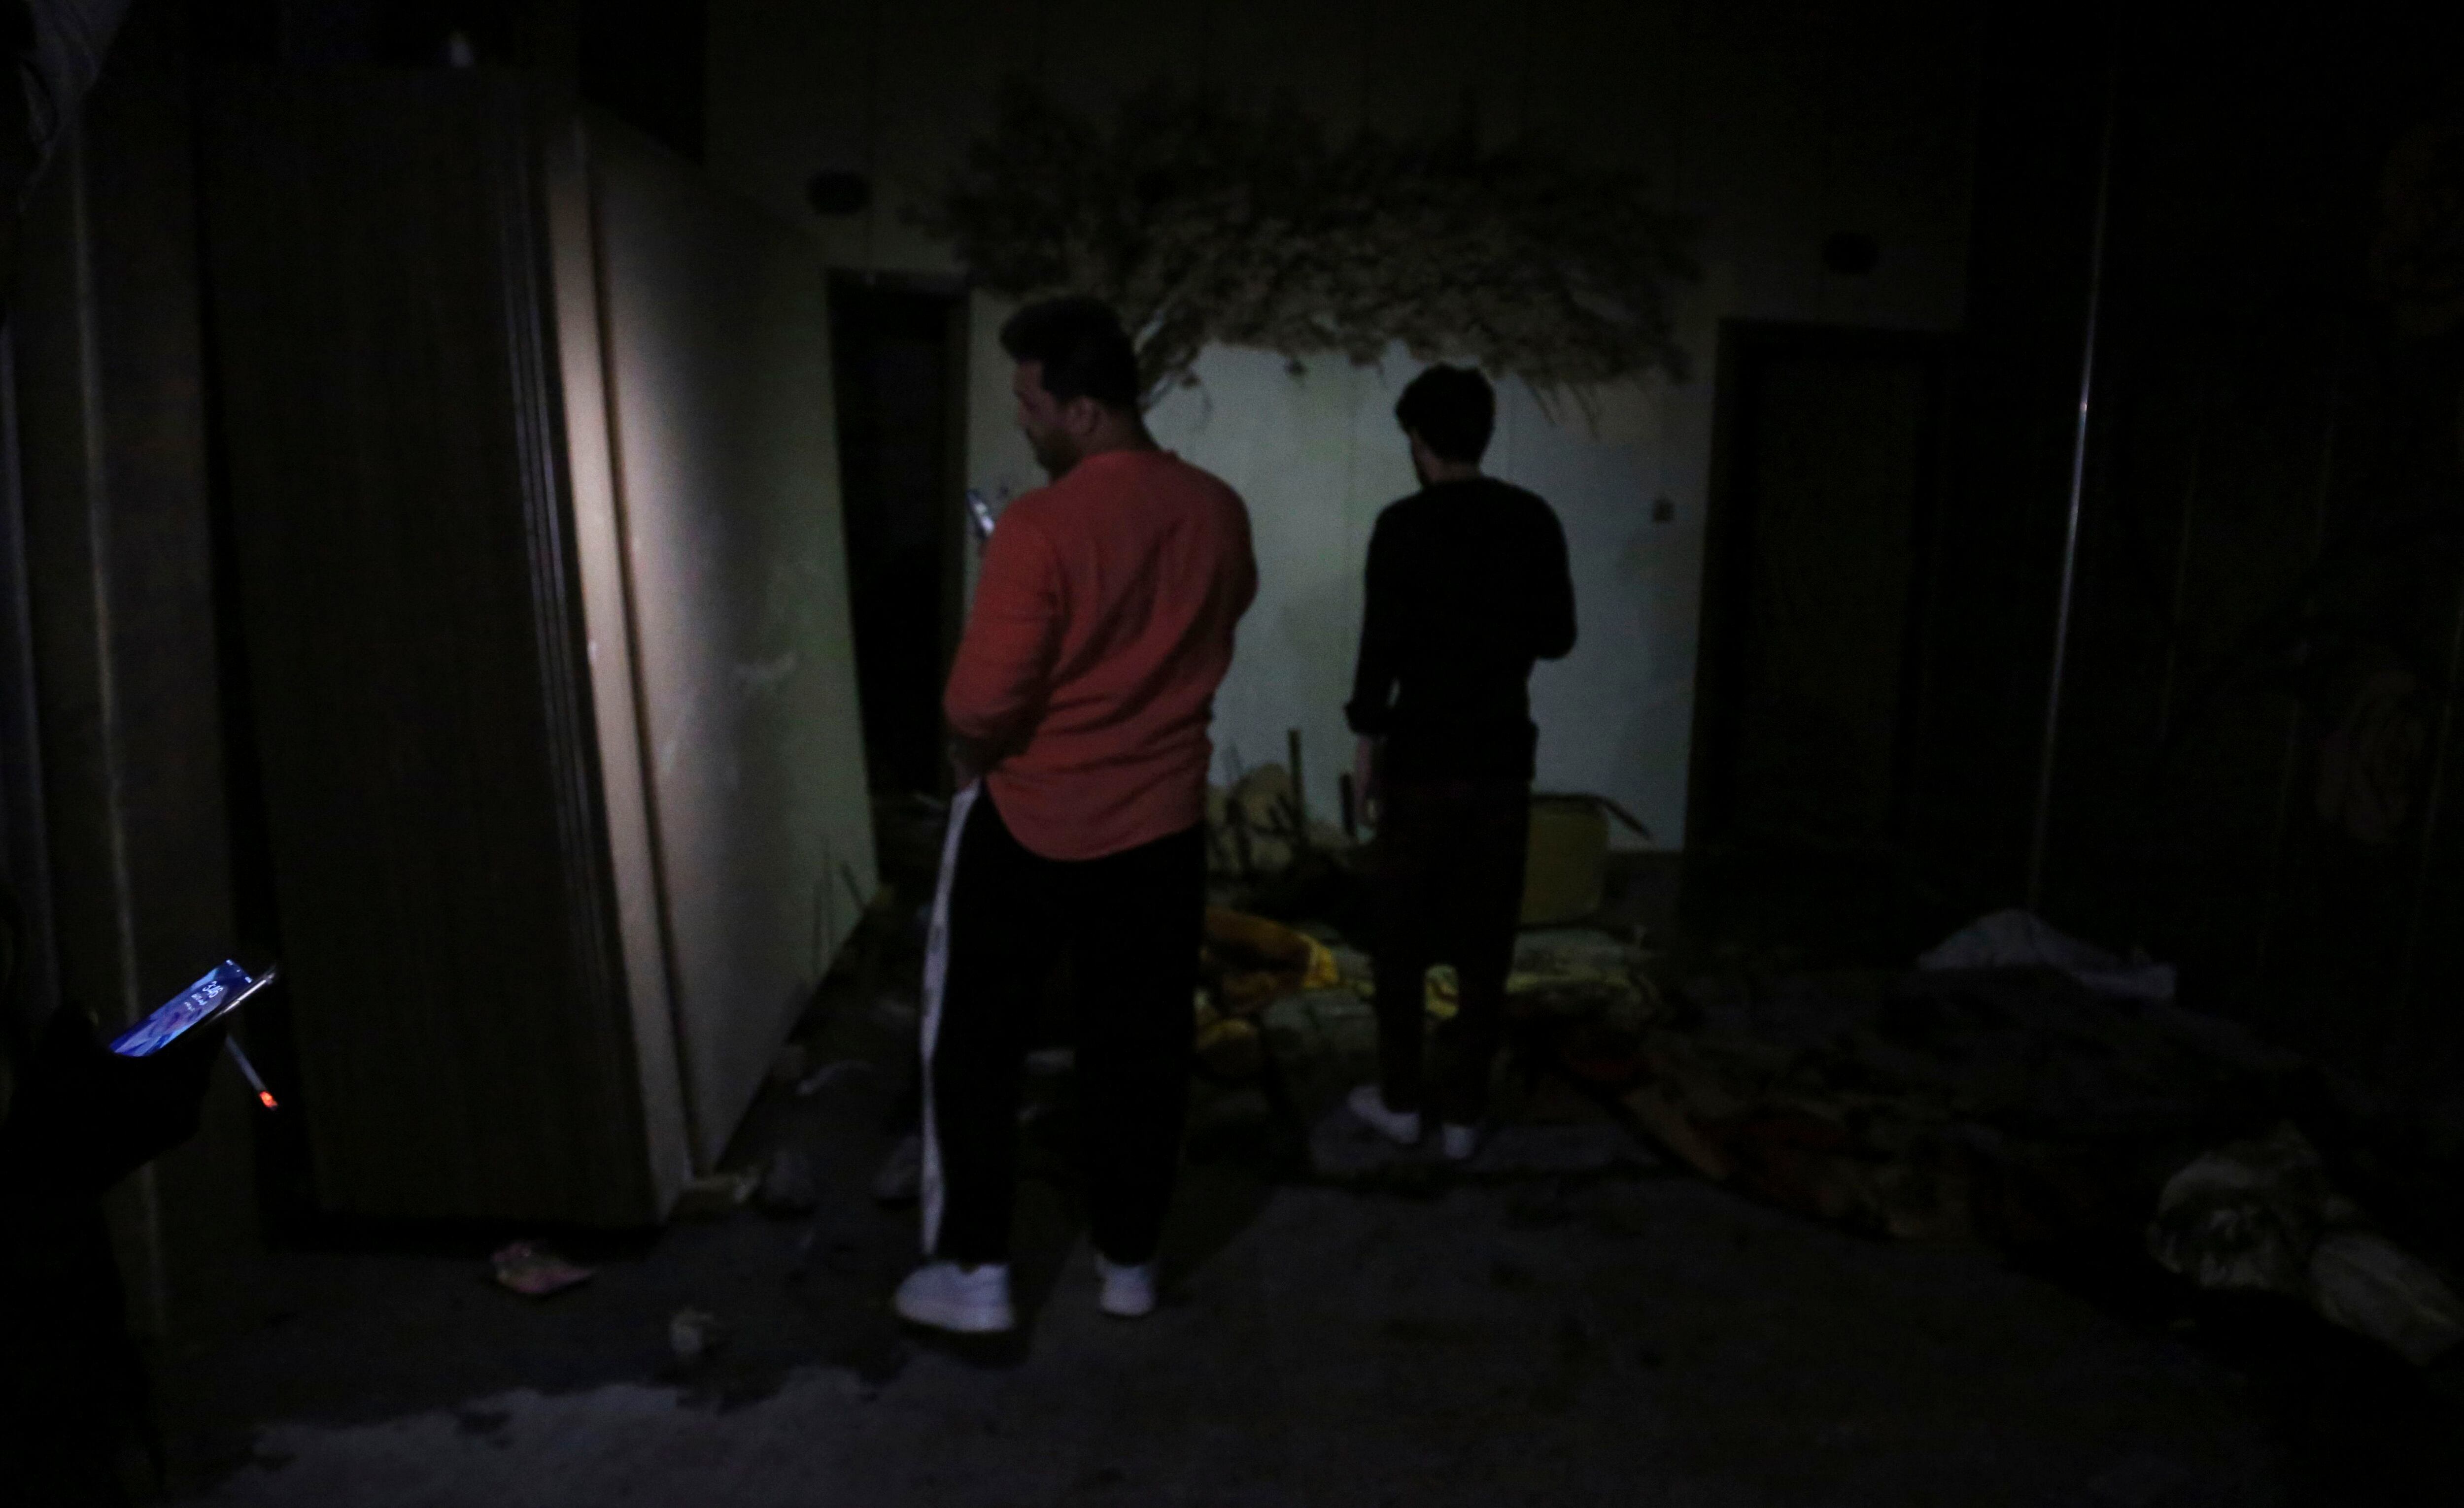 Boda se convierte ó en tragedia: Incendio en salón de Irak deja más de 100 muertos